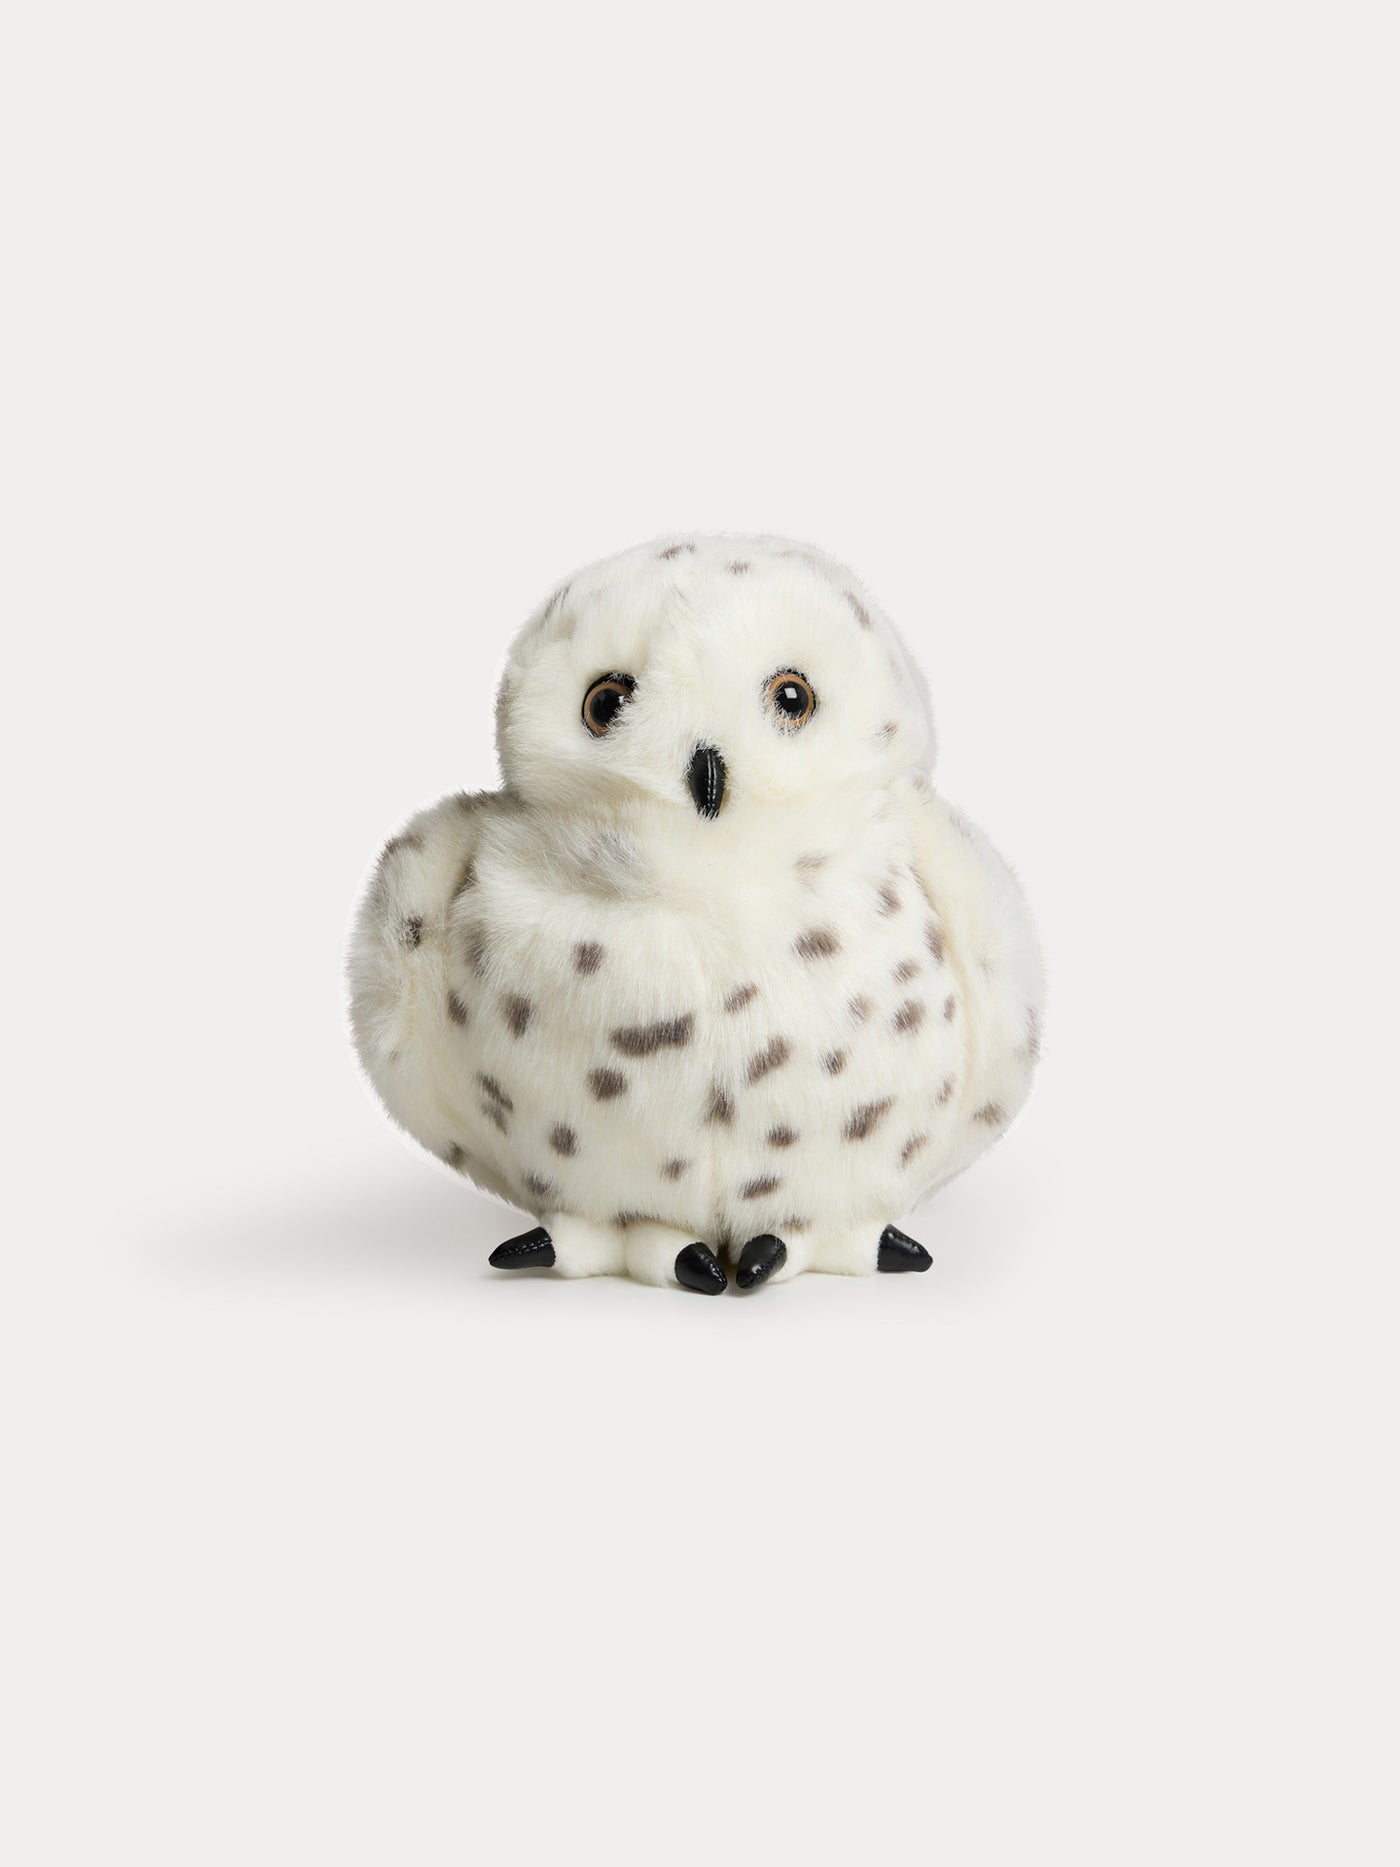 Snowy Owl Stuffed Toy white